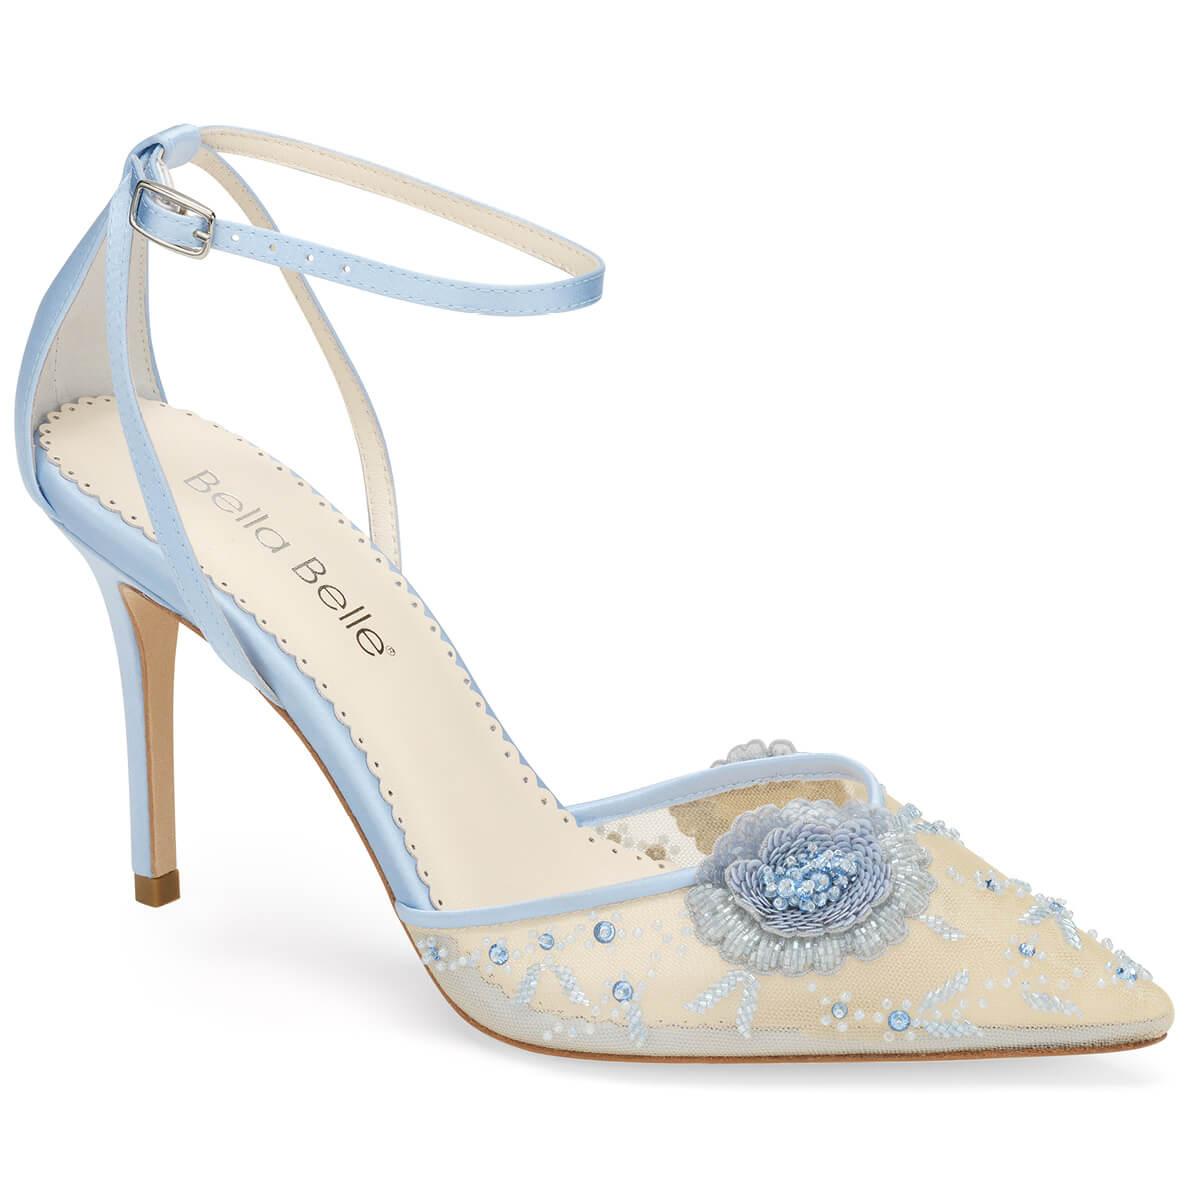 27 Blue Wedding Shoes: Flats, Sandals, Heels & More